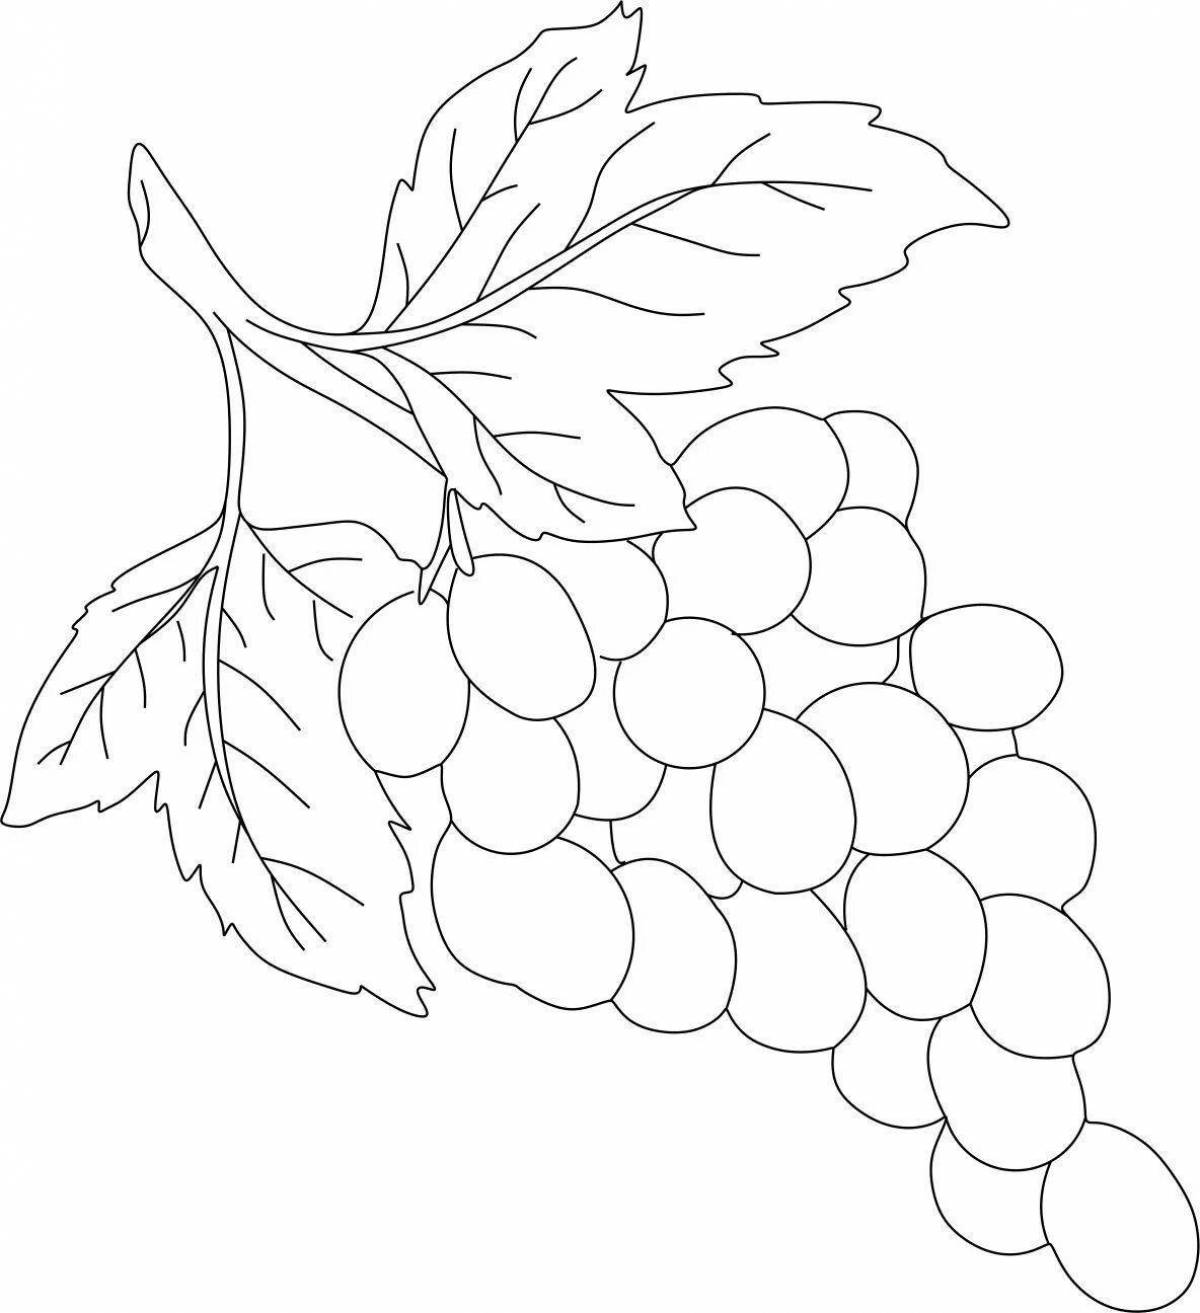 Rich coloring vine branch